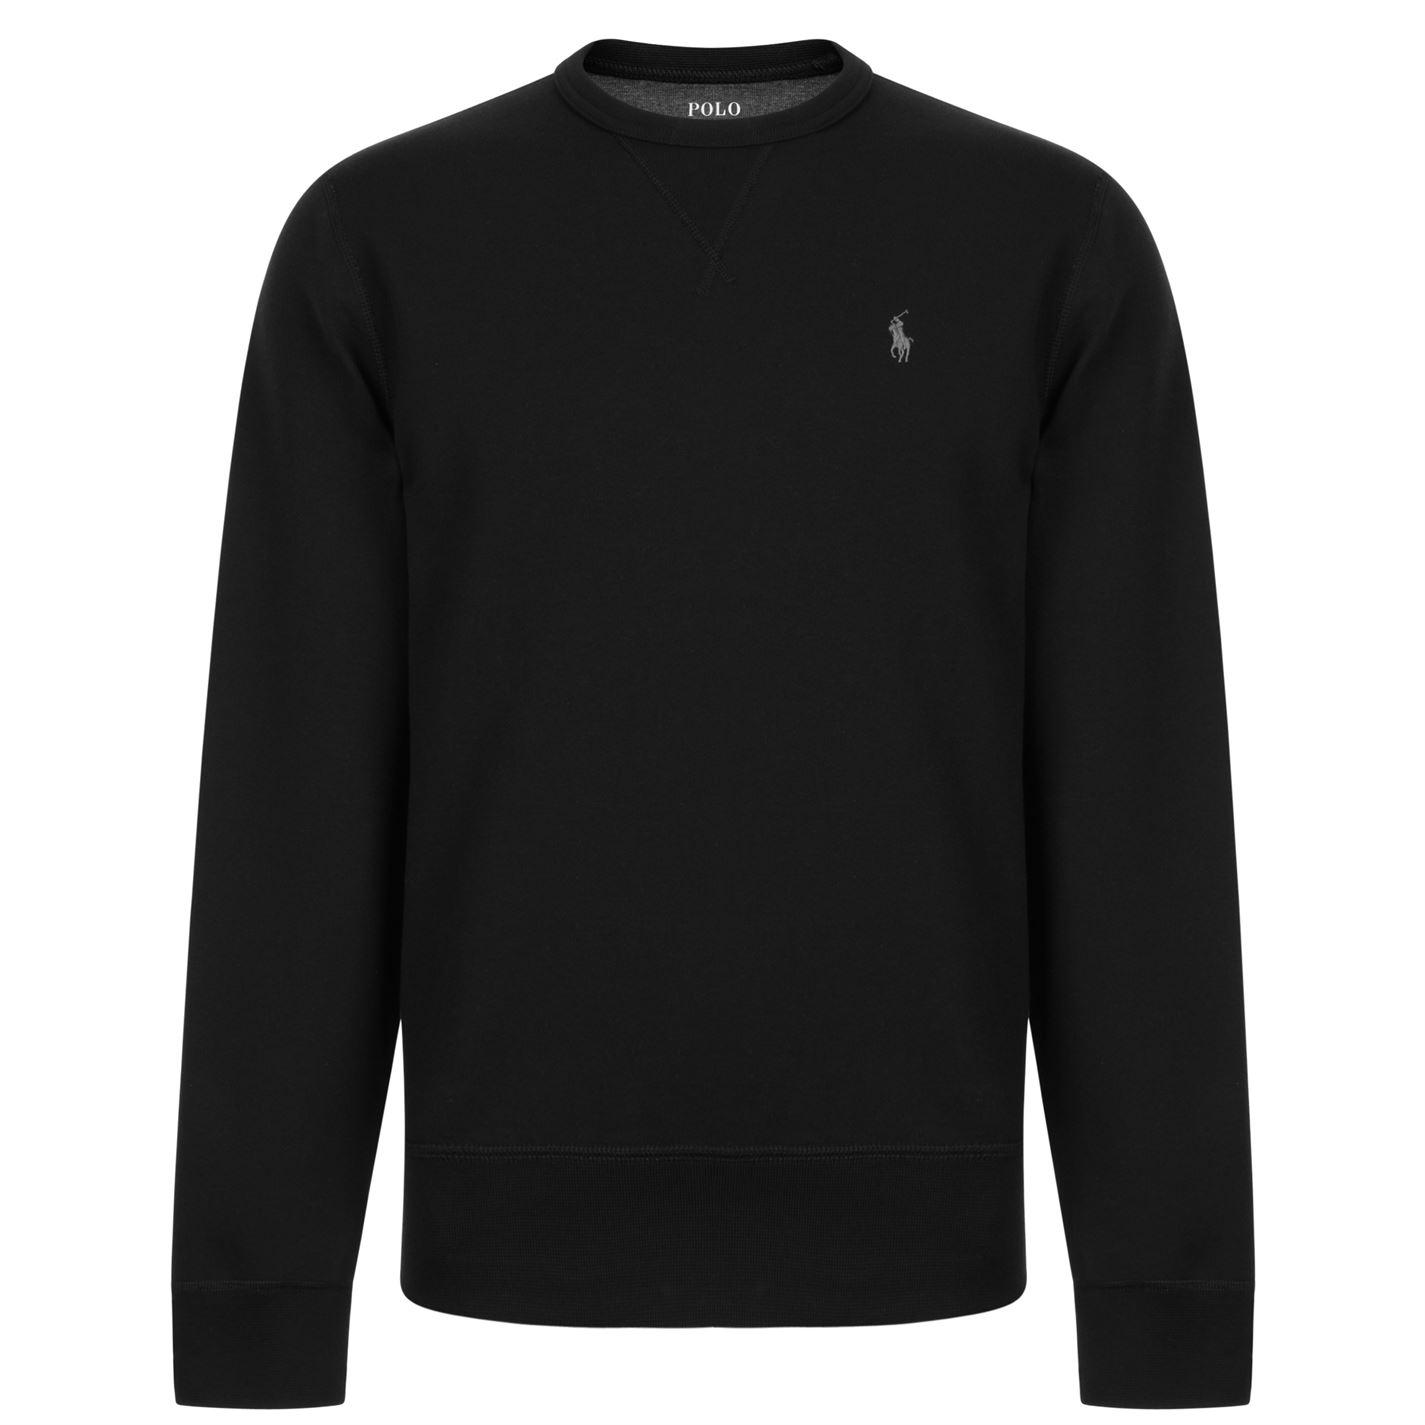 Lyst - Polo Ralph Lauren Logo Crew Neck Sweatshirt in Black for Men